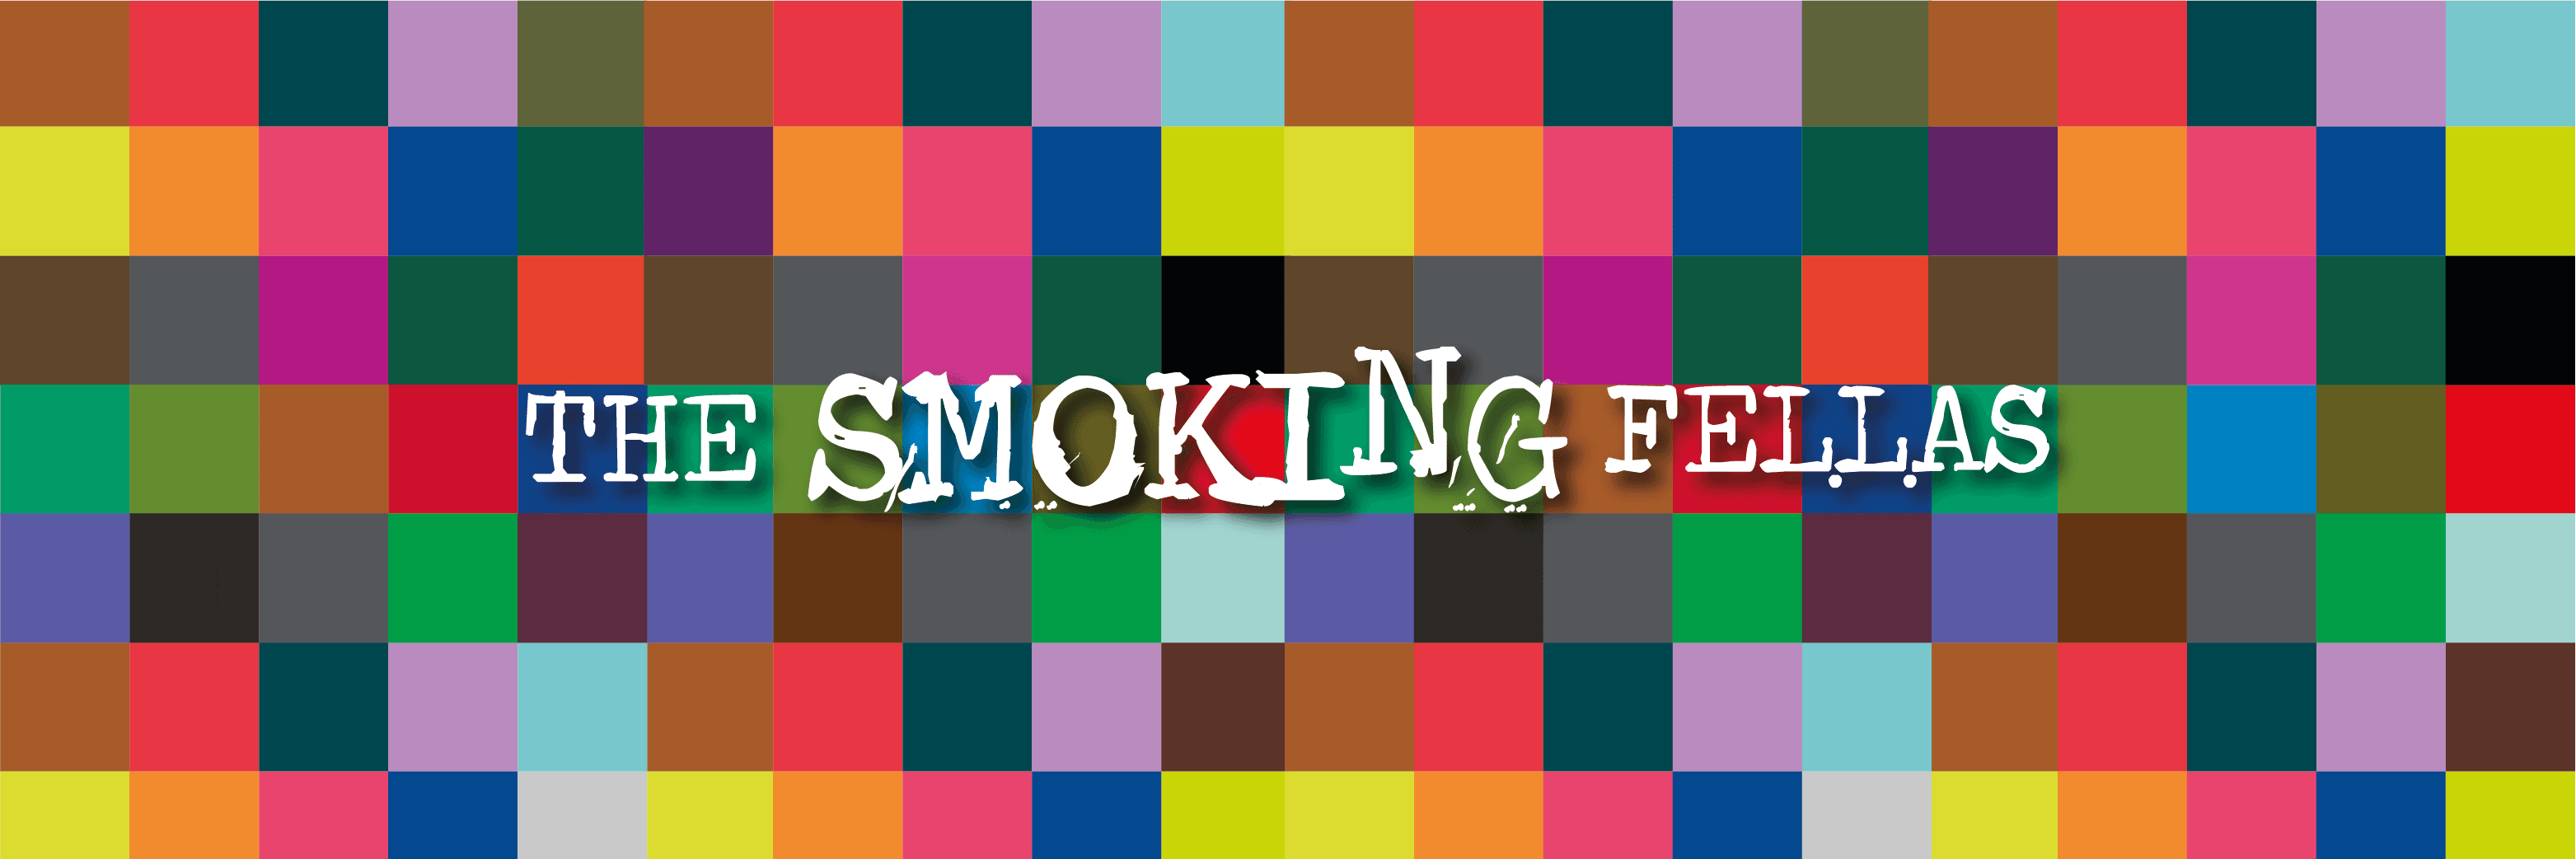 SmokingFellas 横幅